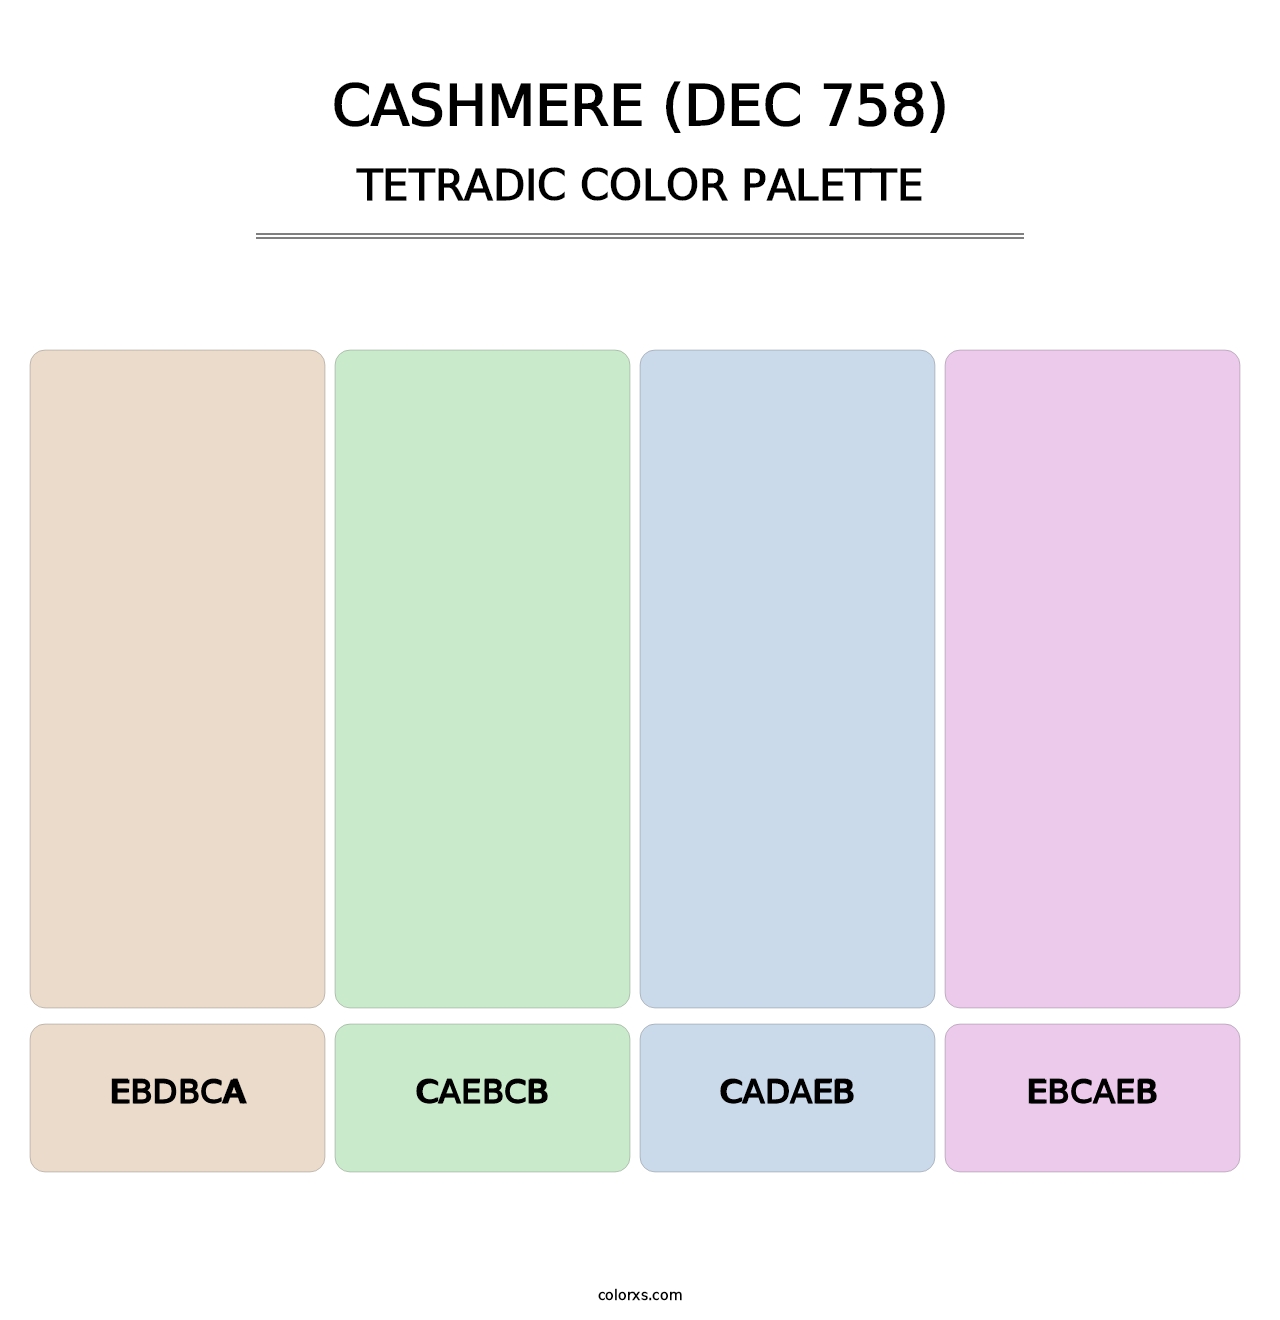 Cashmere (DEC 758) - Tetradic Color Palette